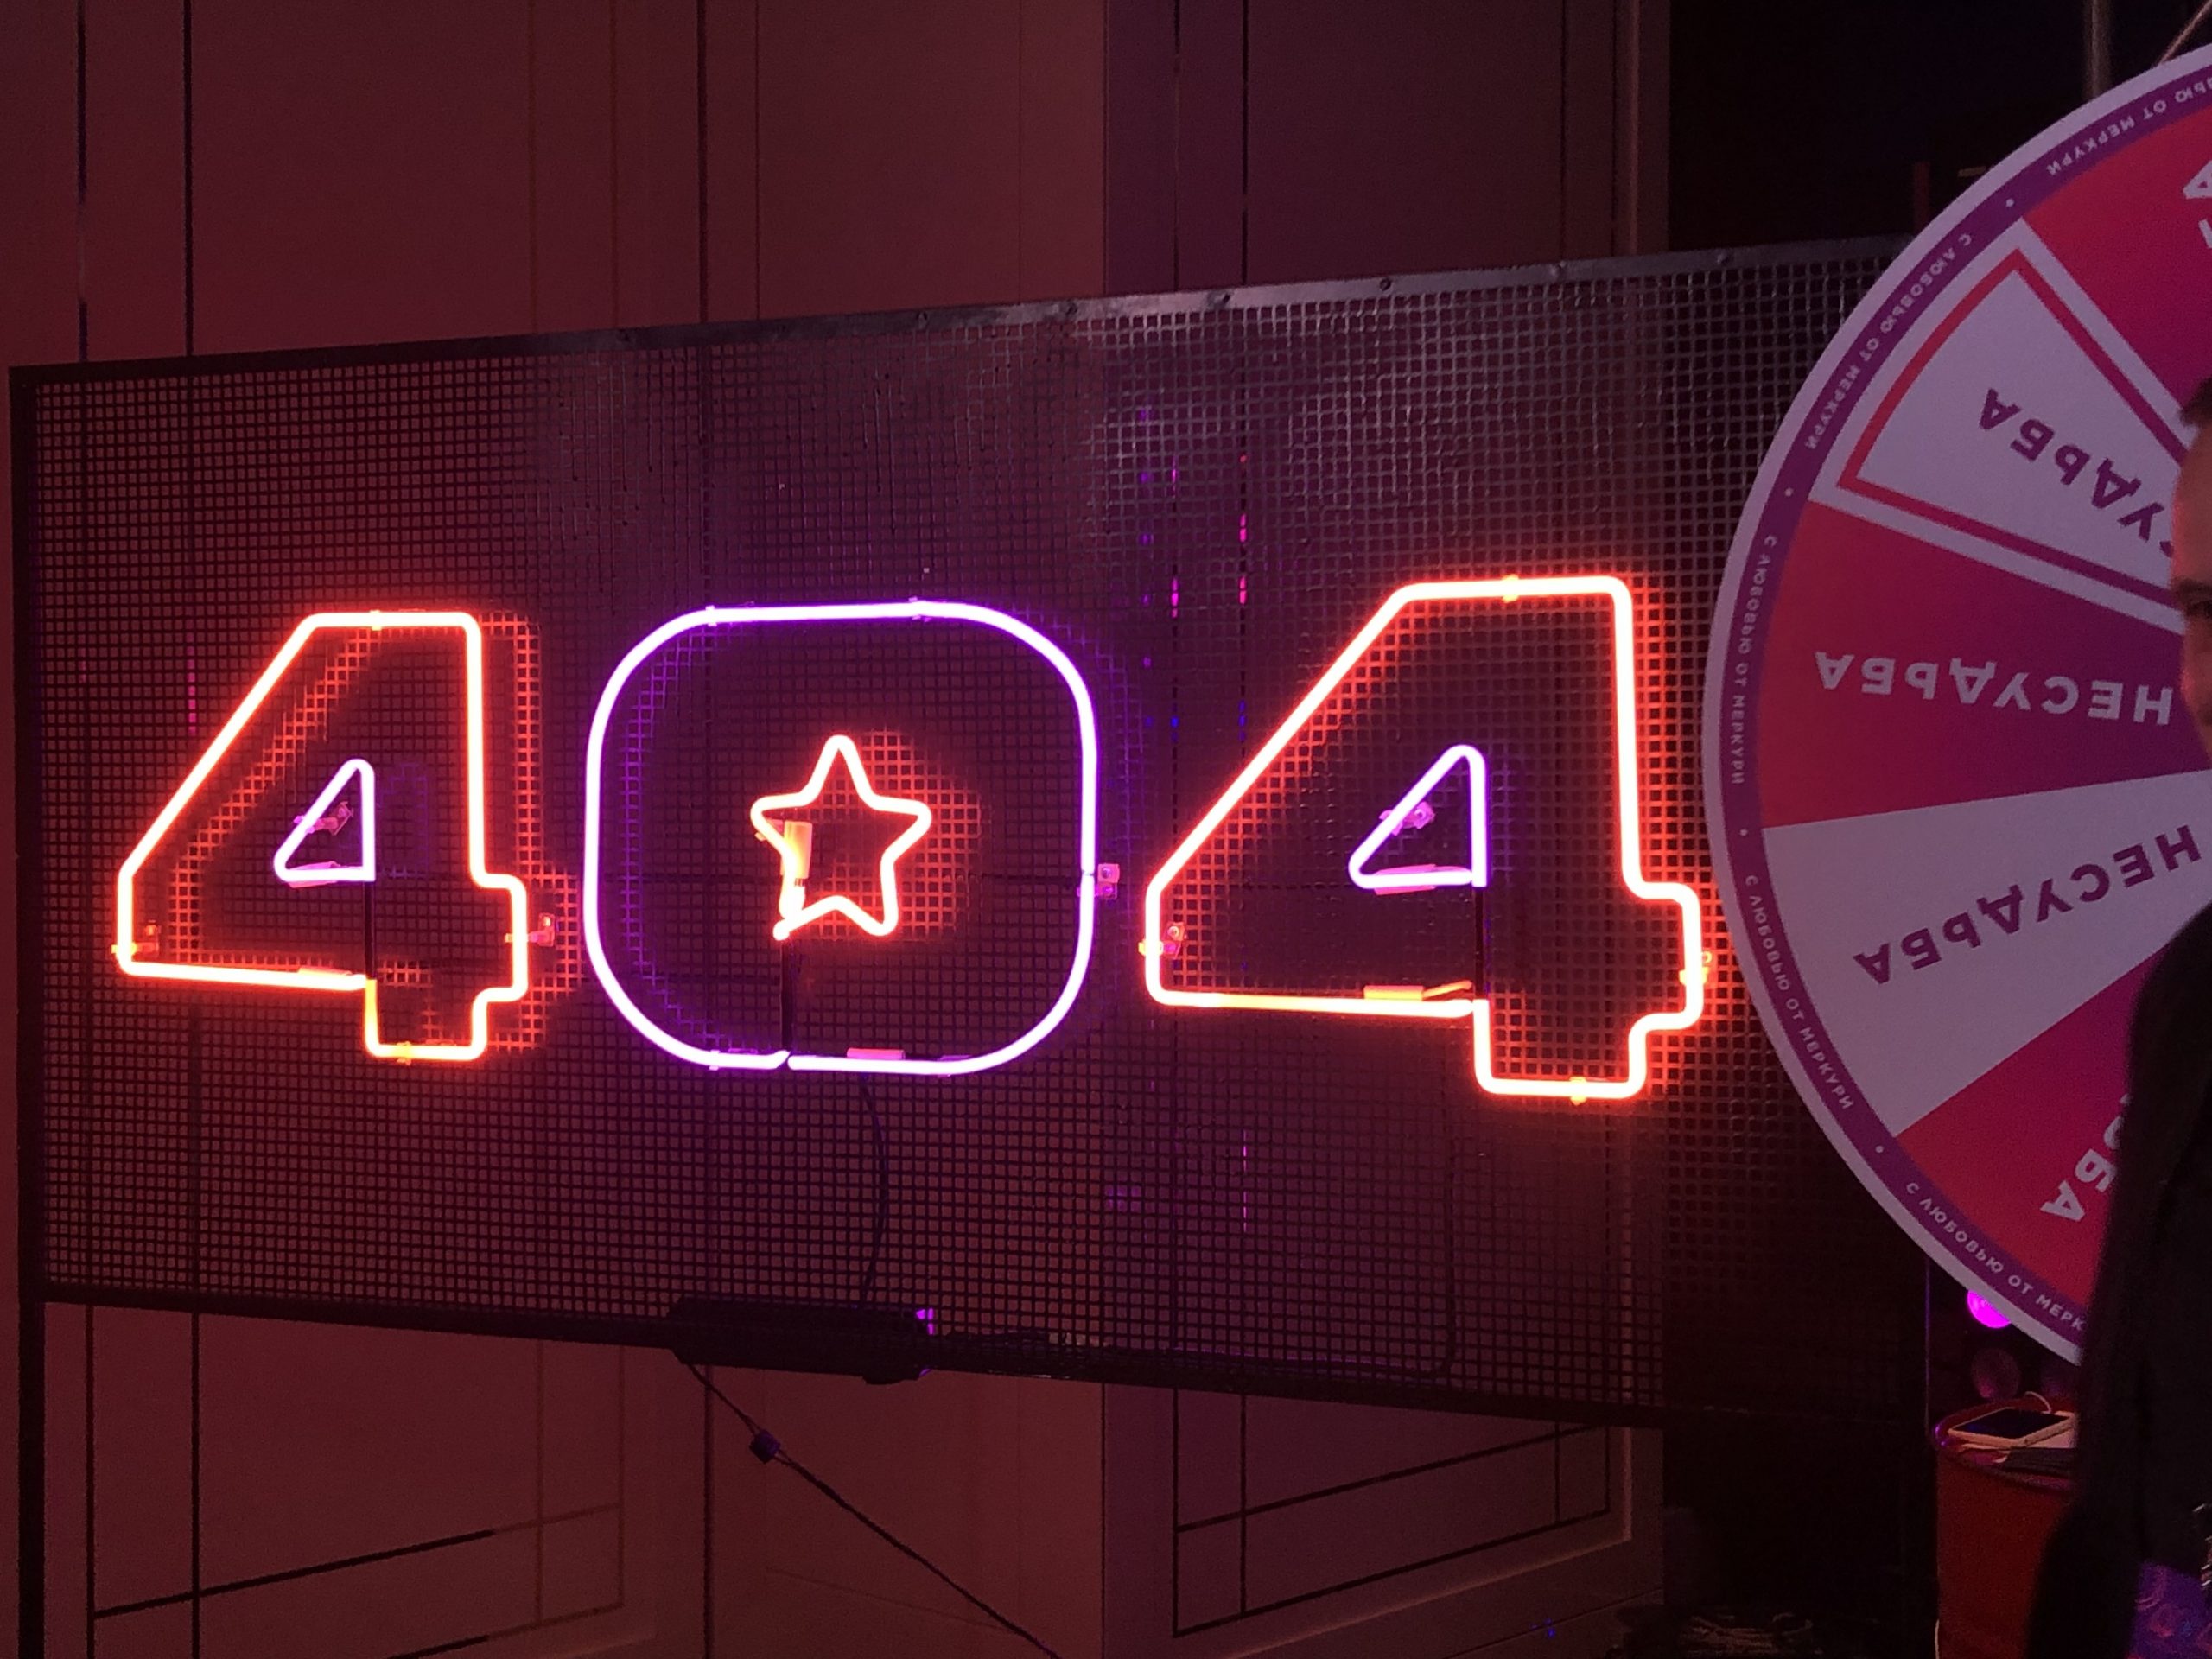 Артемий Лебедев, внутряки IT-гигантов и много неона: как прошел юбилейный 404fest